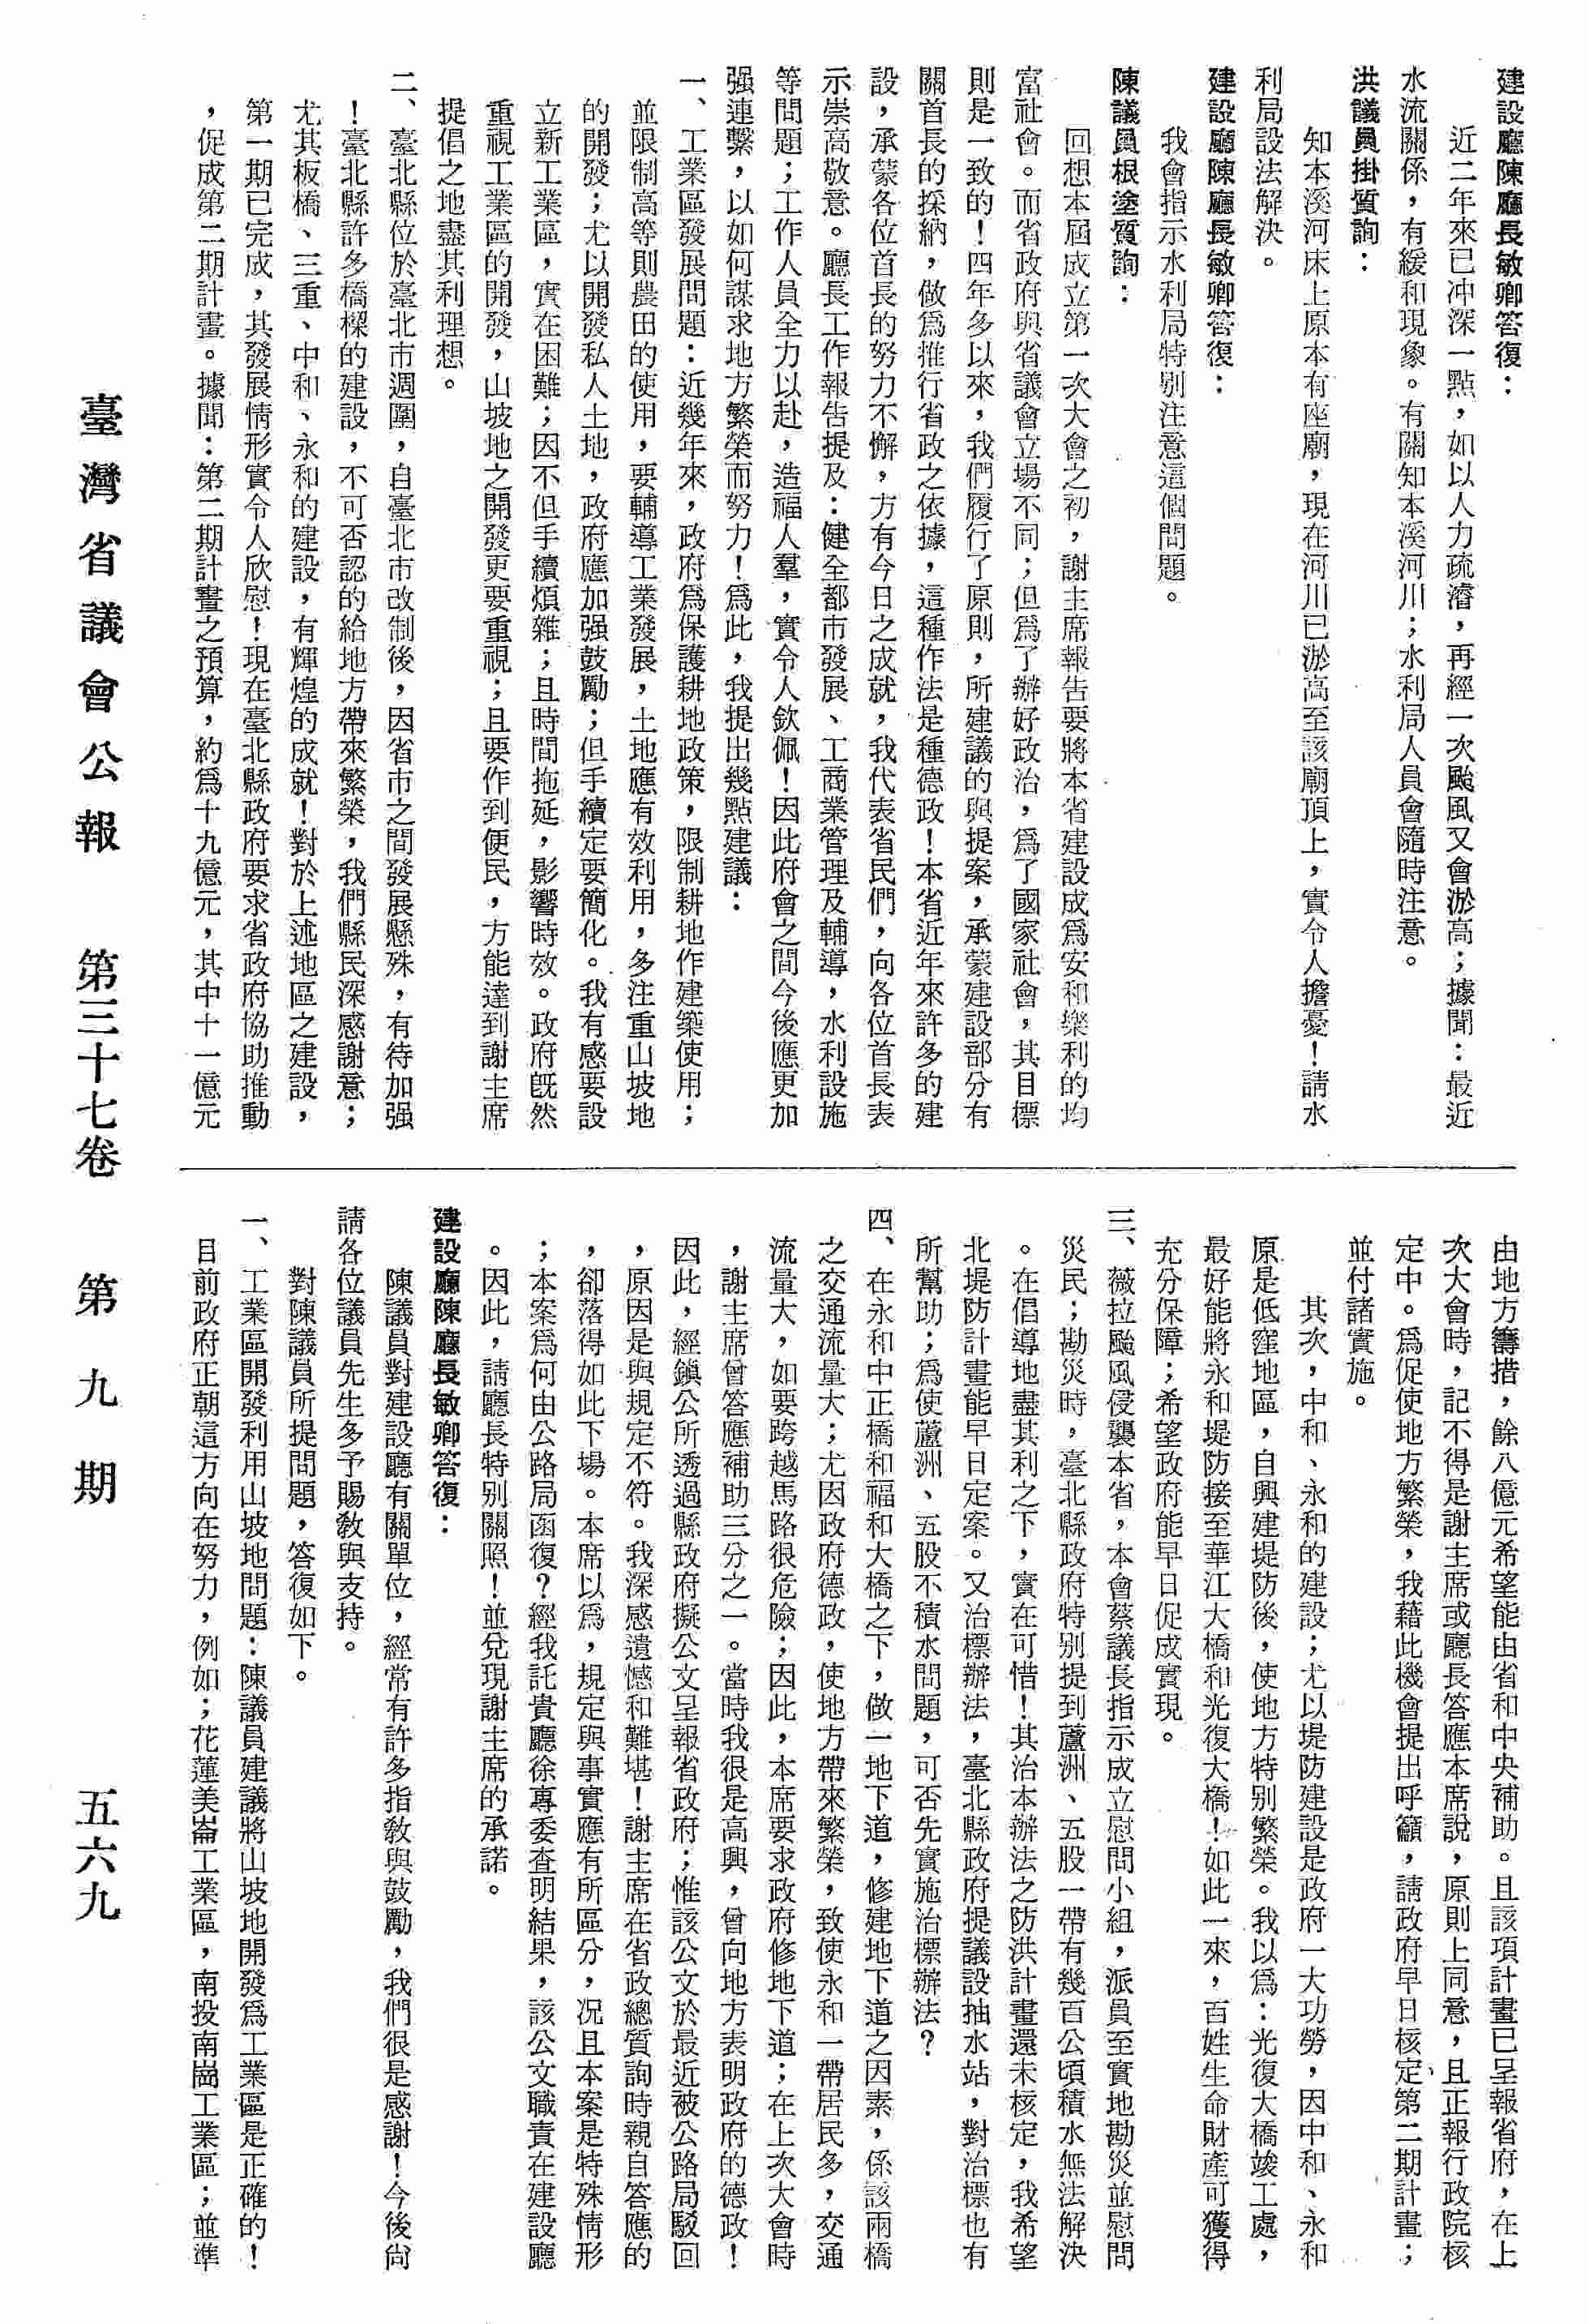 资料类型: 类型:公报 描述层次:案 著       台湾省议会 描述: 版本